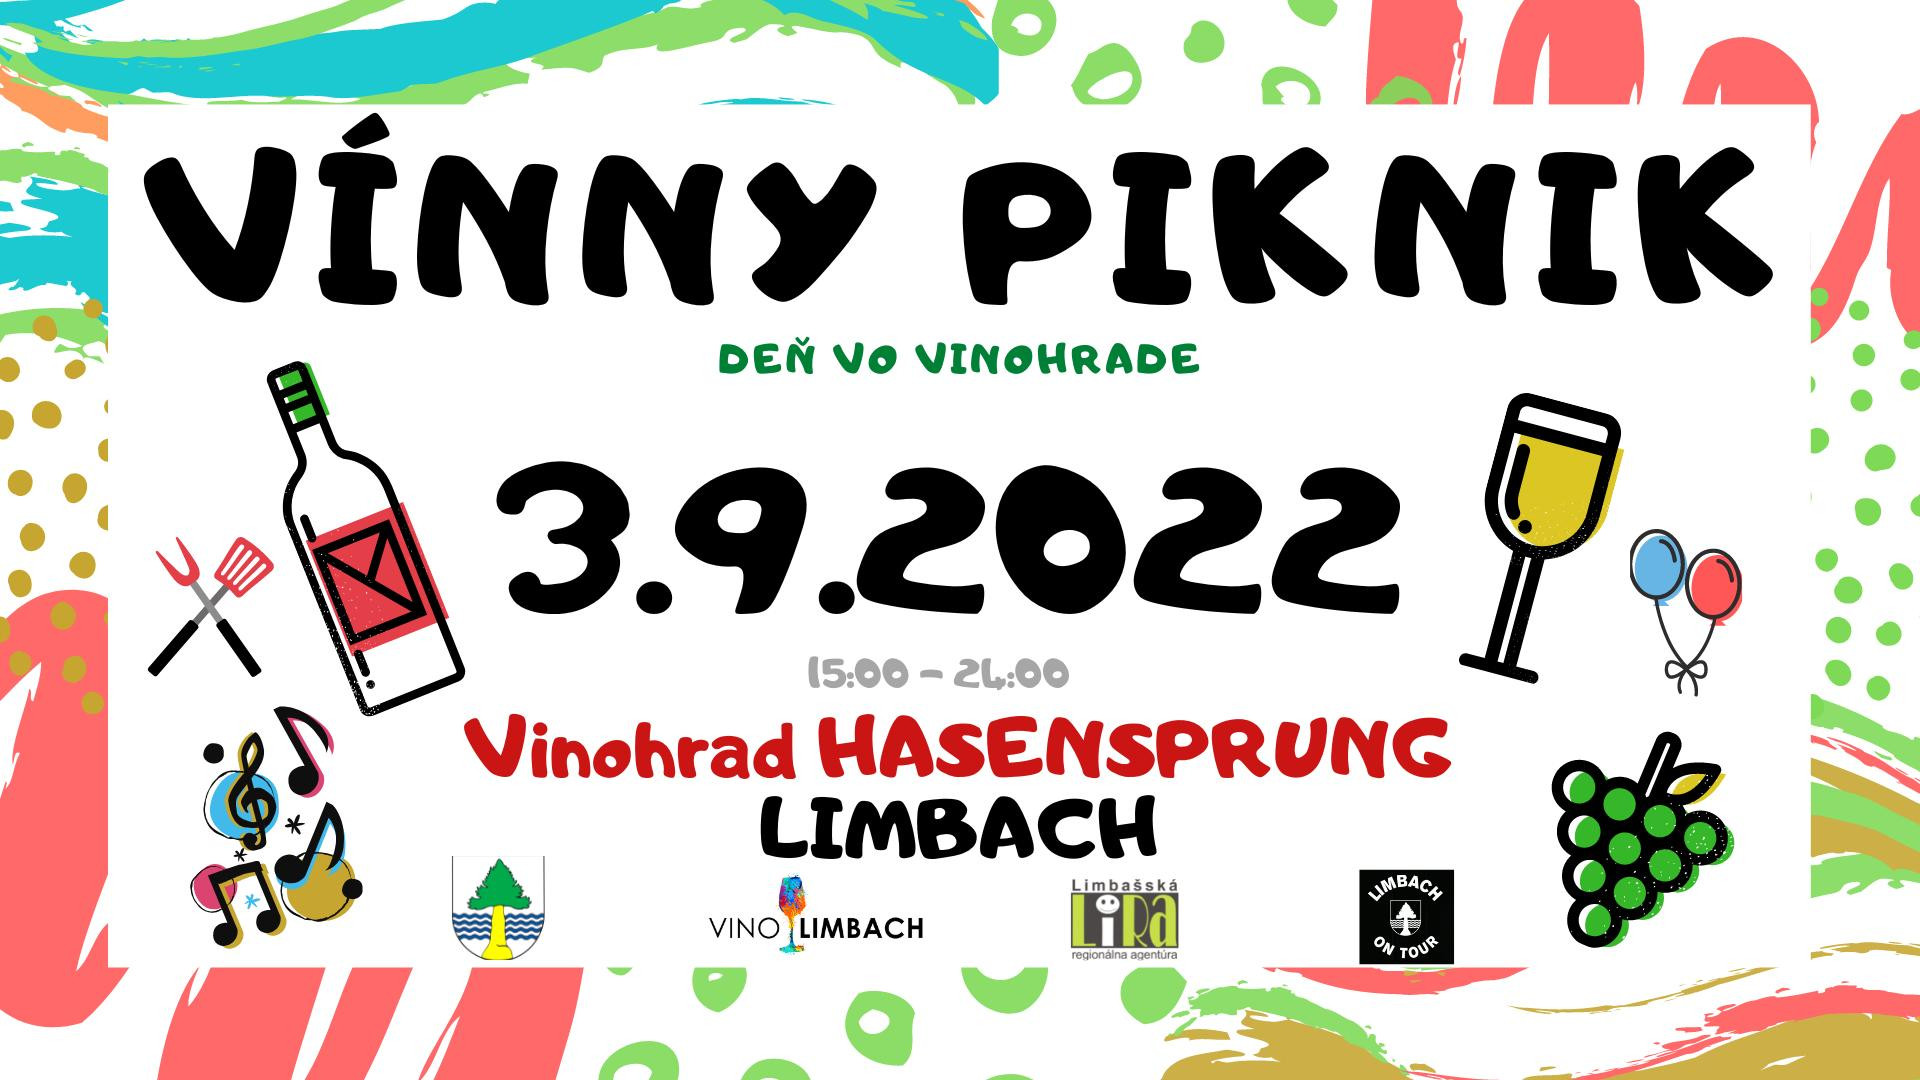 Vínny piknik Limbach 2022